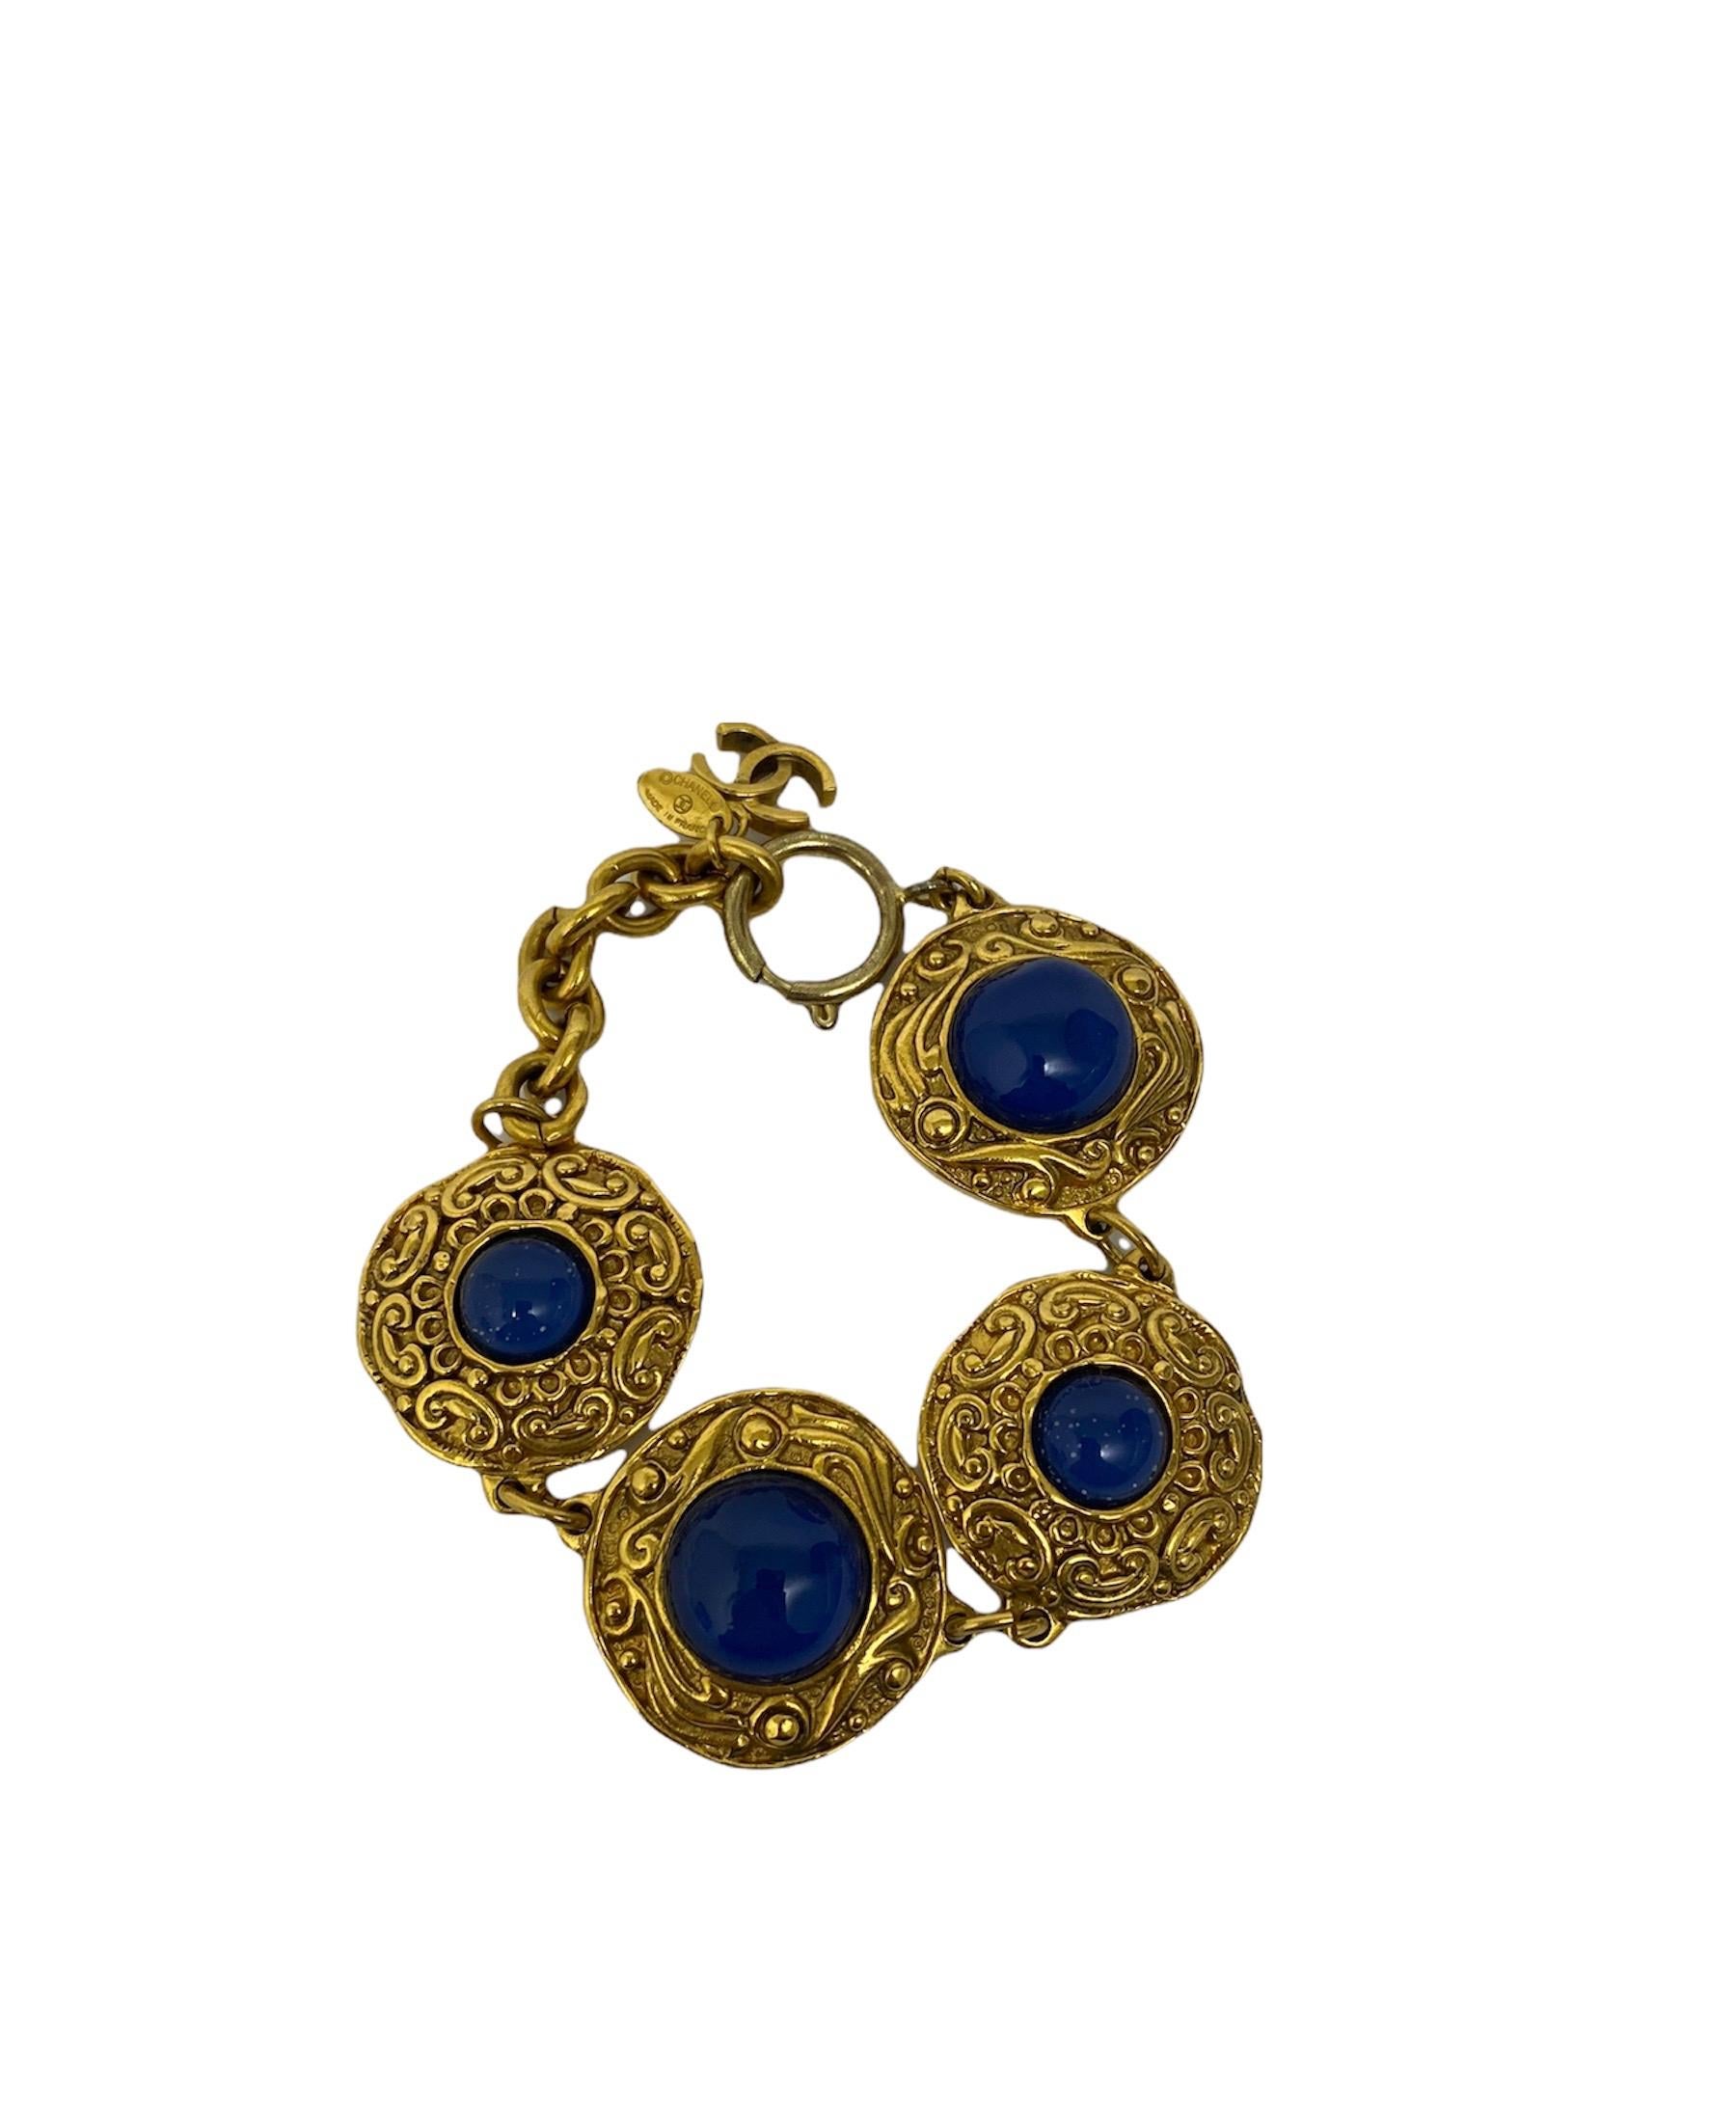 Chanel Armband mit goldenen Beschlägen und blauen Kristallen, Länge: 23,5 cm. Der Zustand des Armbands ist sehr gut mit leichten Gebrauchsspuren.